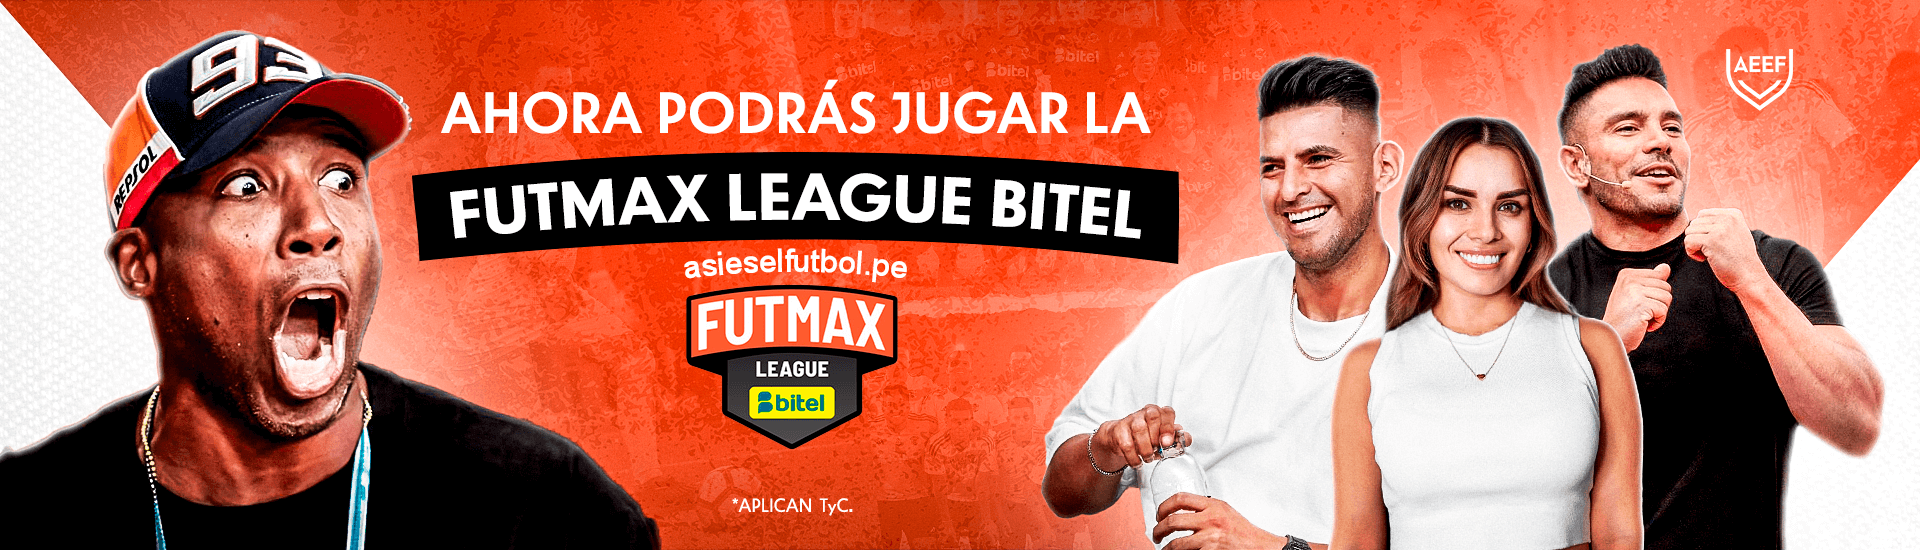 Futmax League